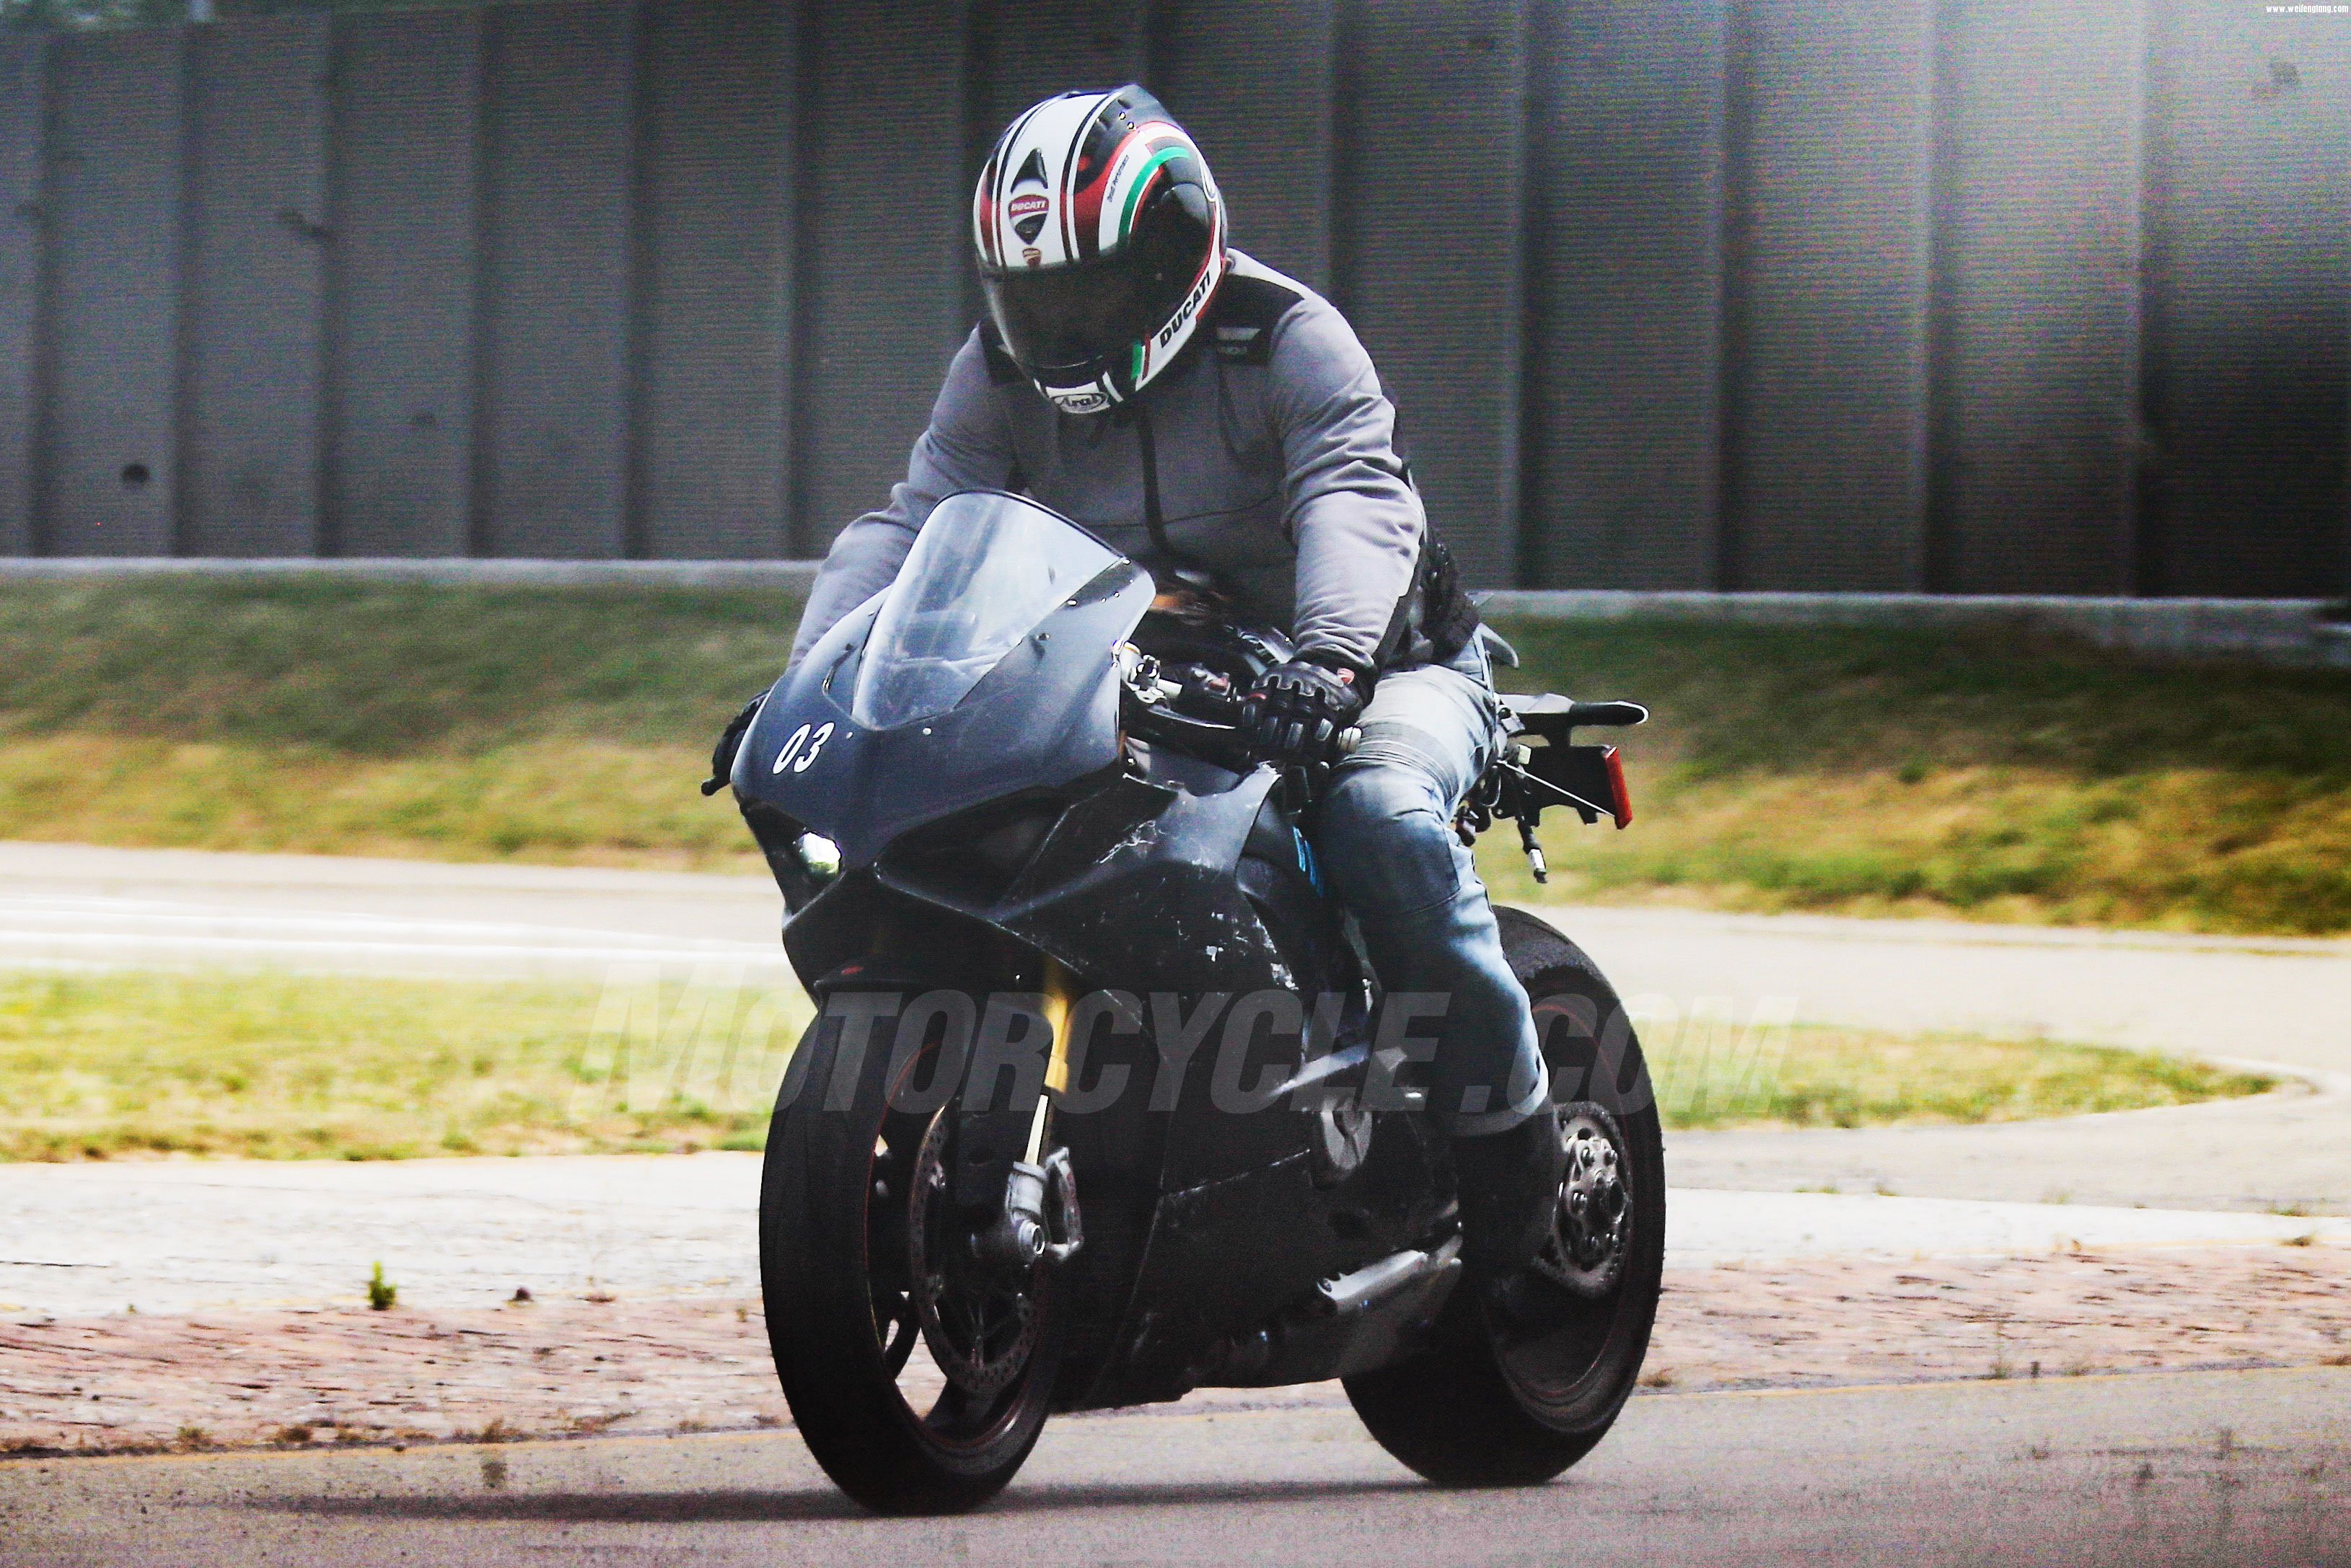 062817-2018-Ducati-V4-Superbike-003.jpg